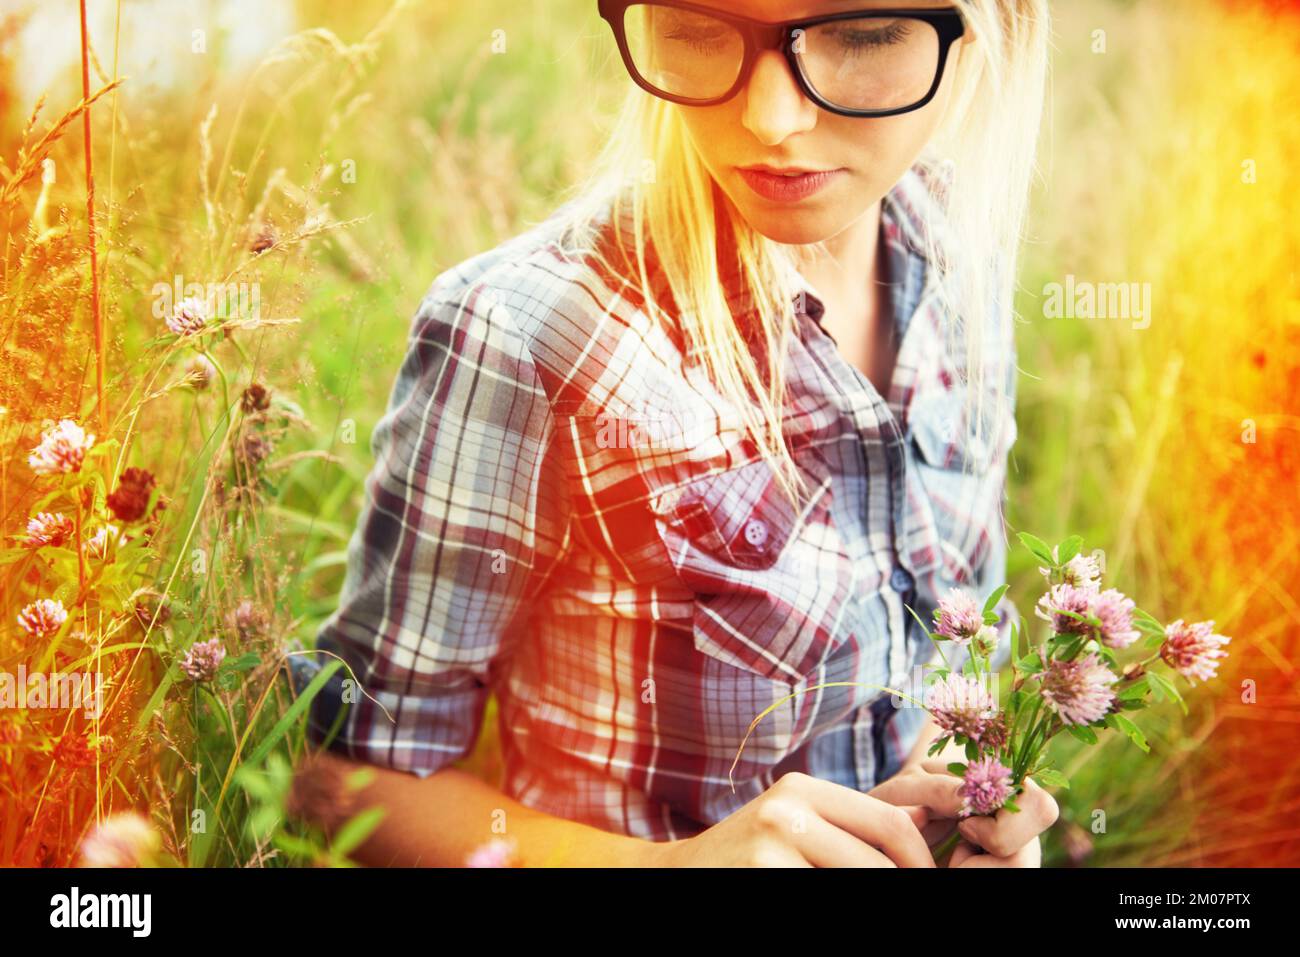 Tage voller Launen. Wunderschöner junger Hipster auf einem Feld - Lomo-Fotografie. Stockfoto